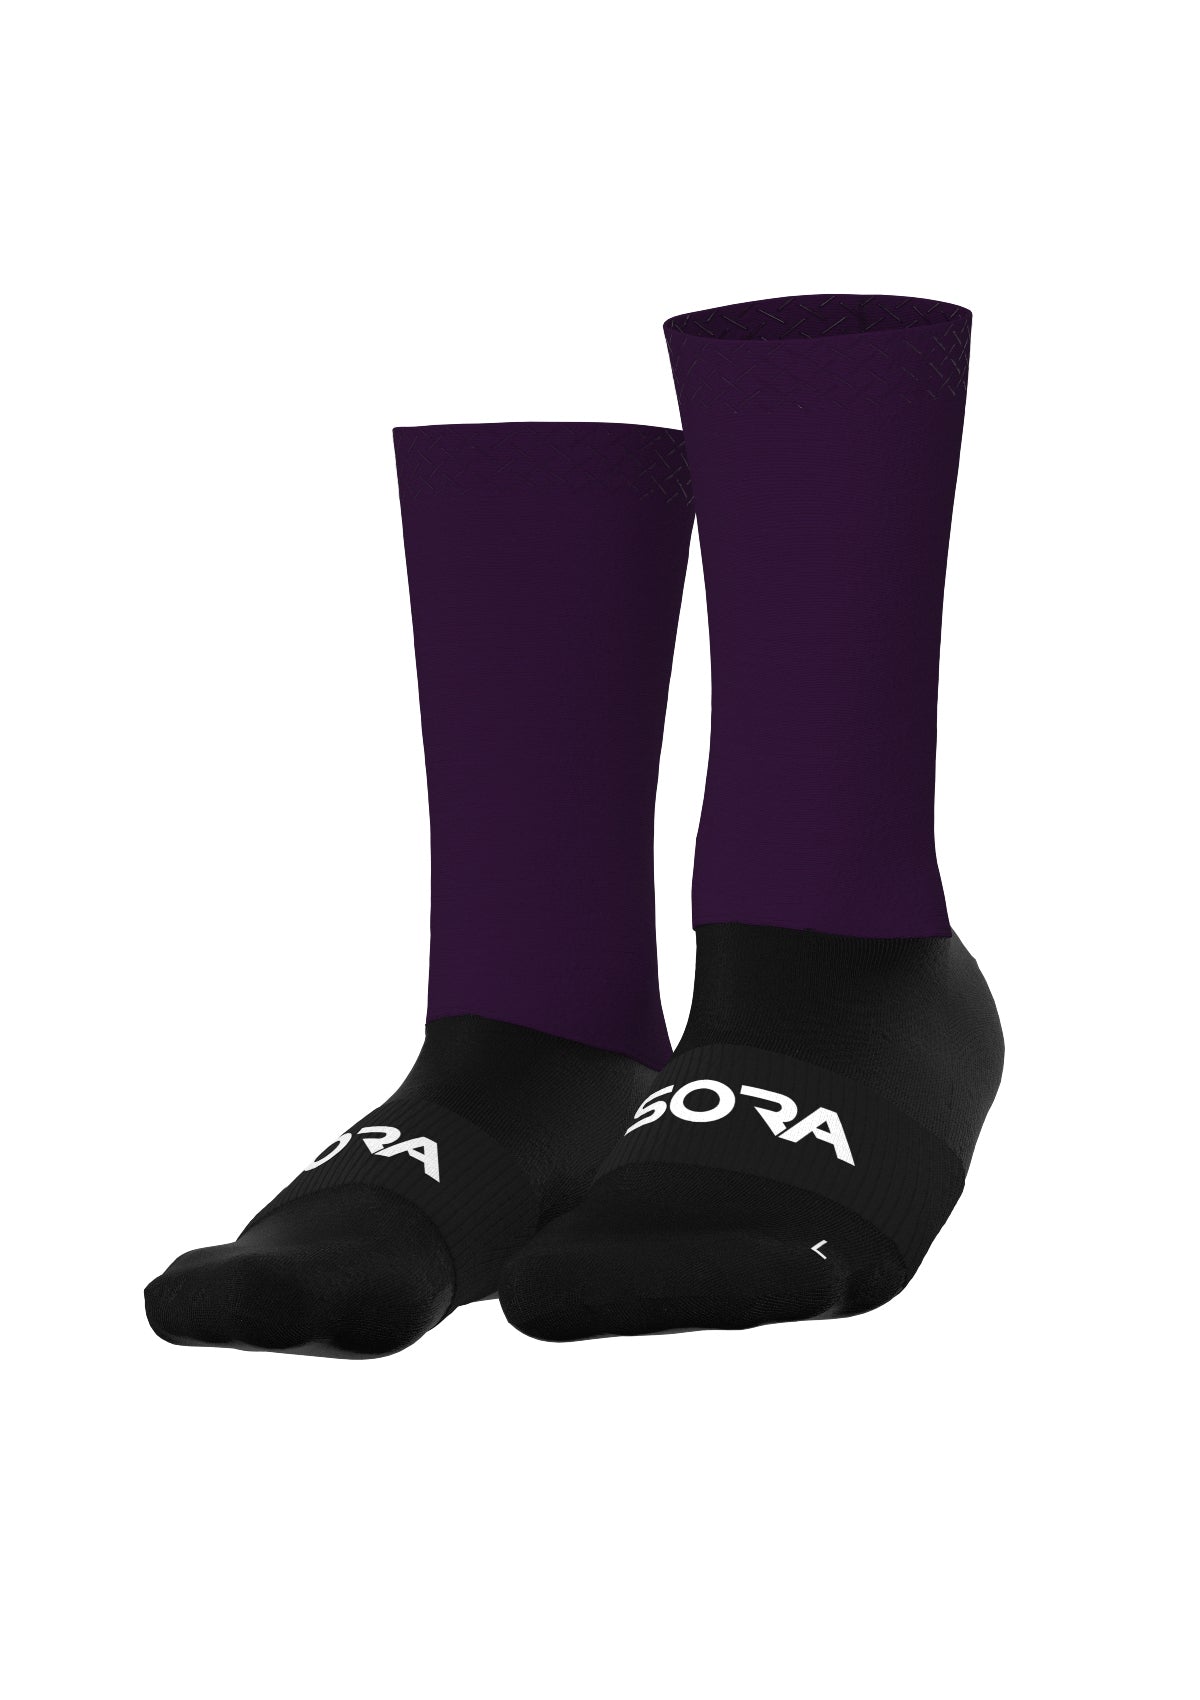 Aero Pro Light Violett Fahrrad Socken